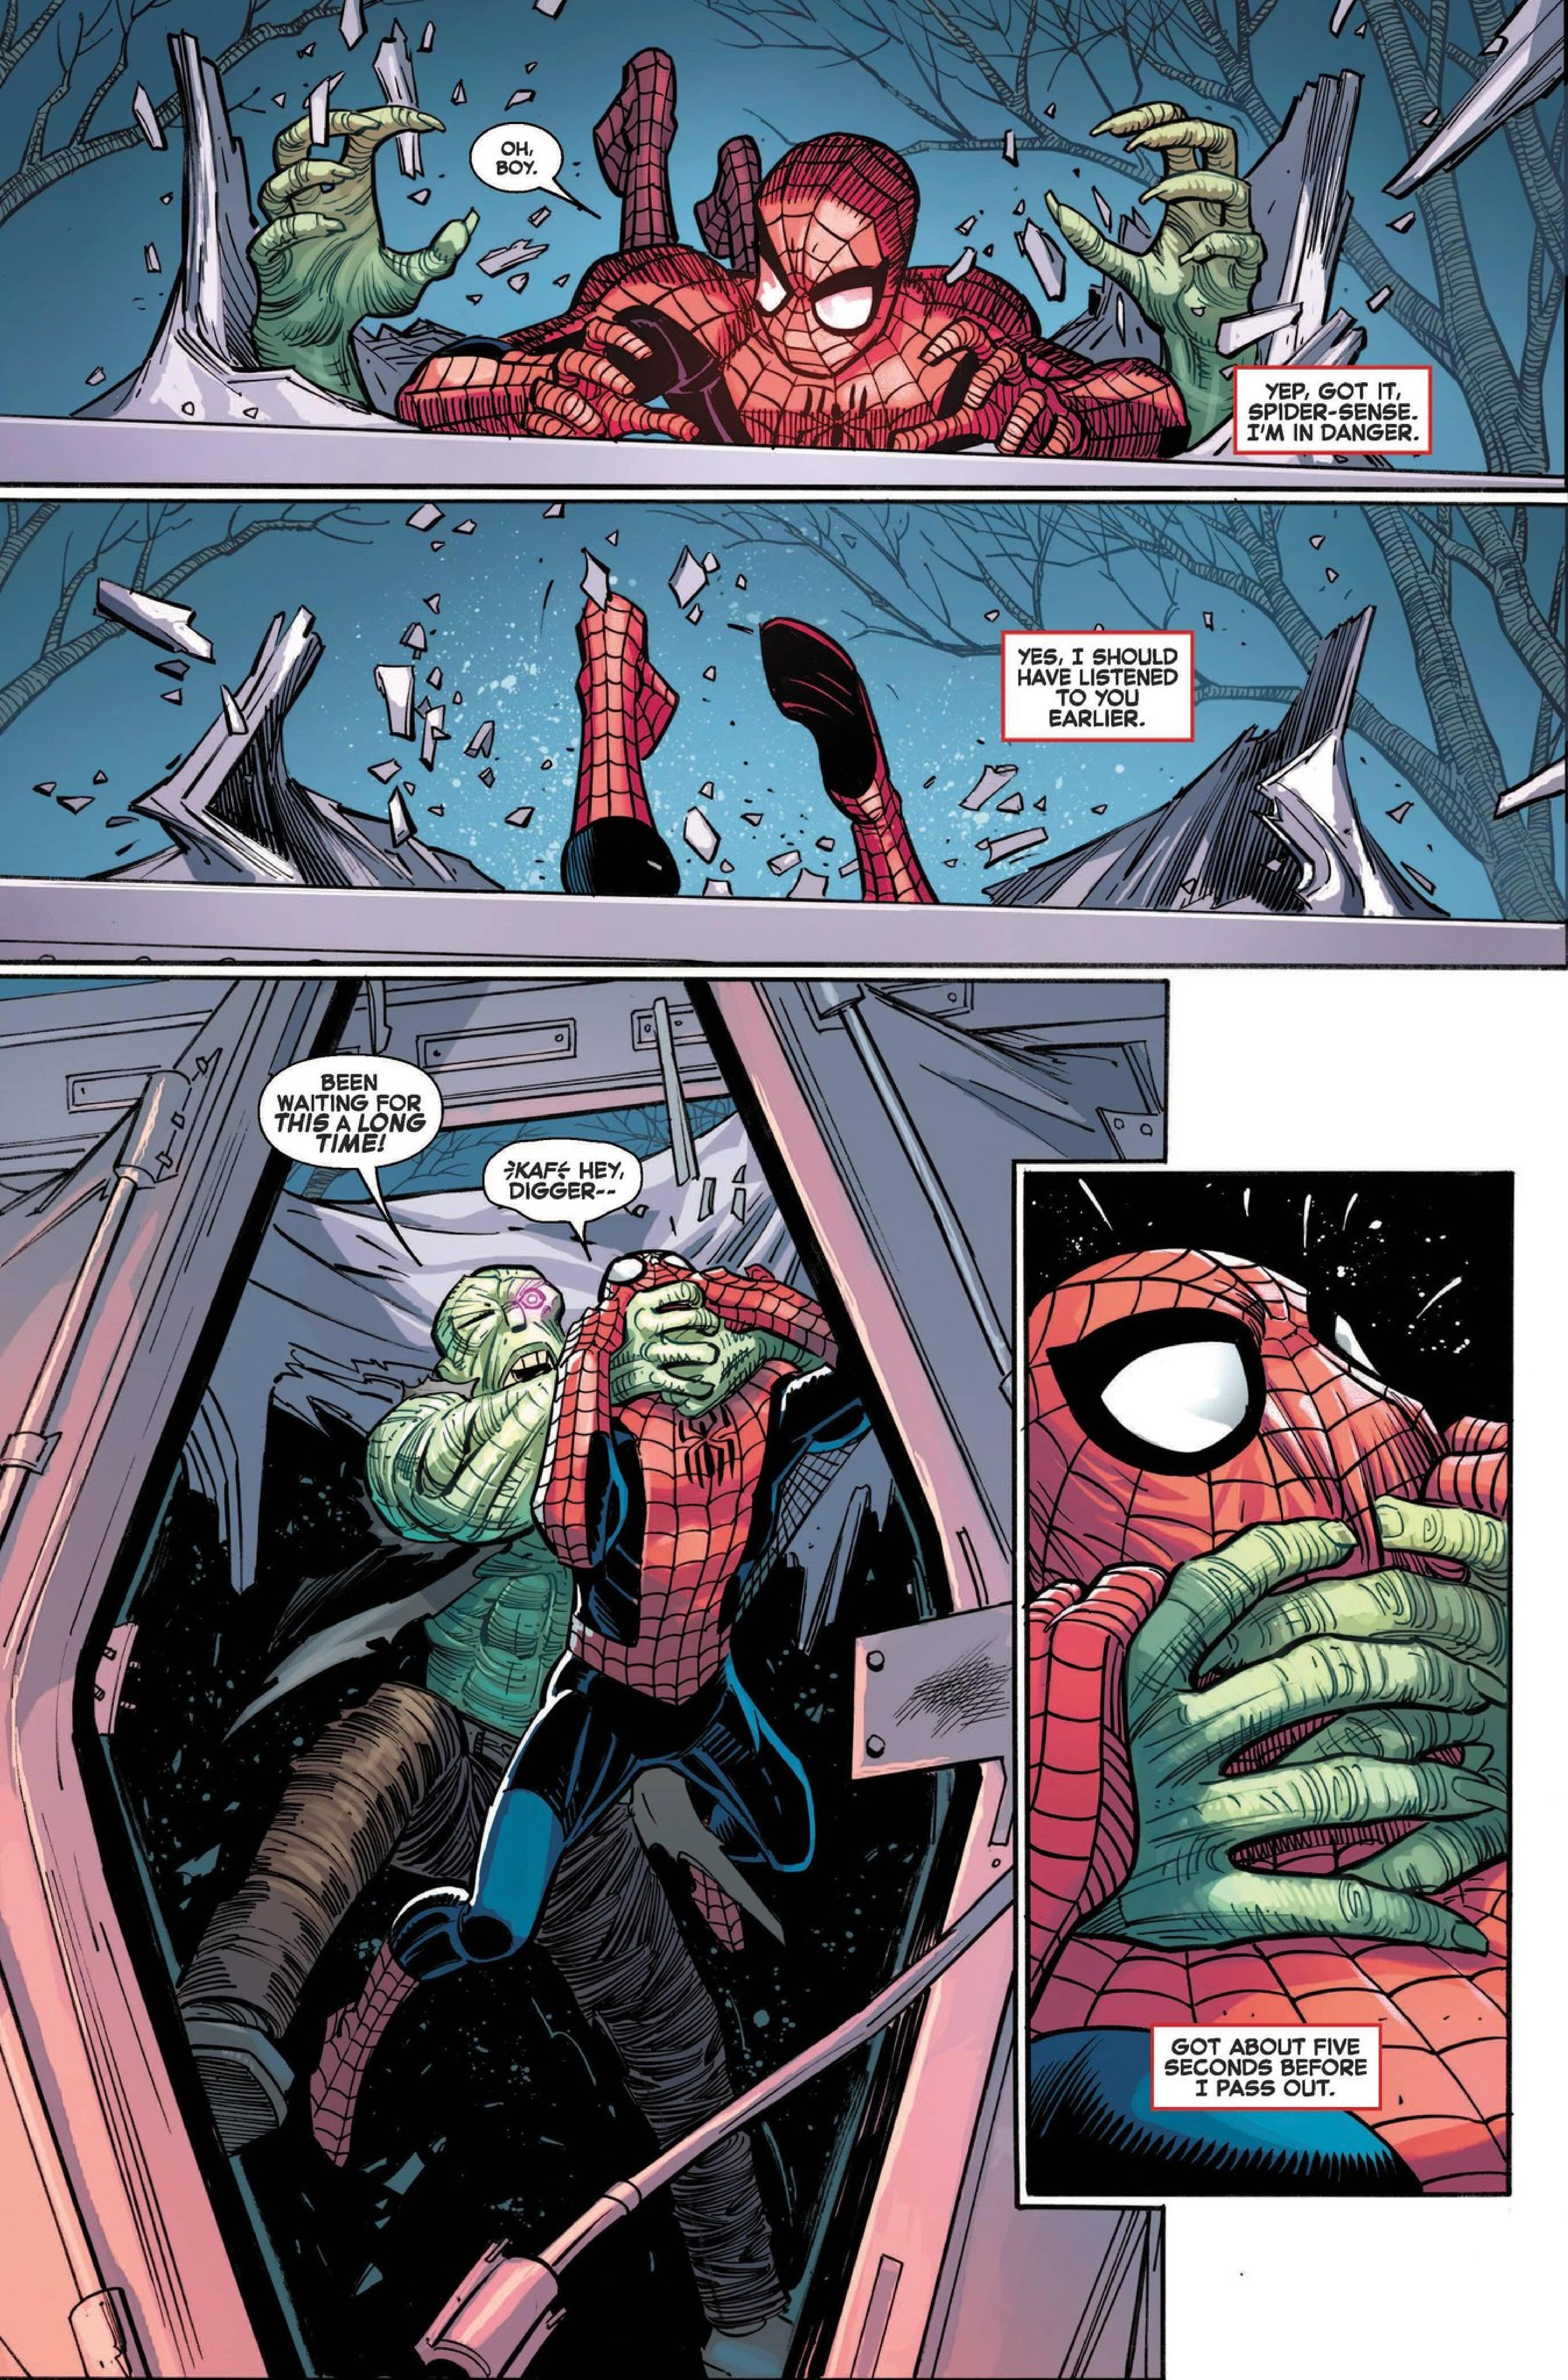 Amazing Spider-Man #1 Besch Virgin Variant (2022)